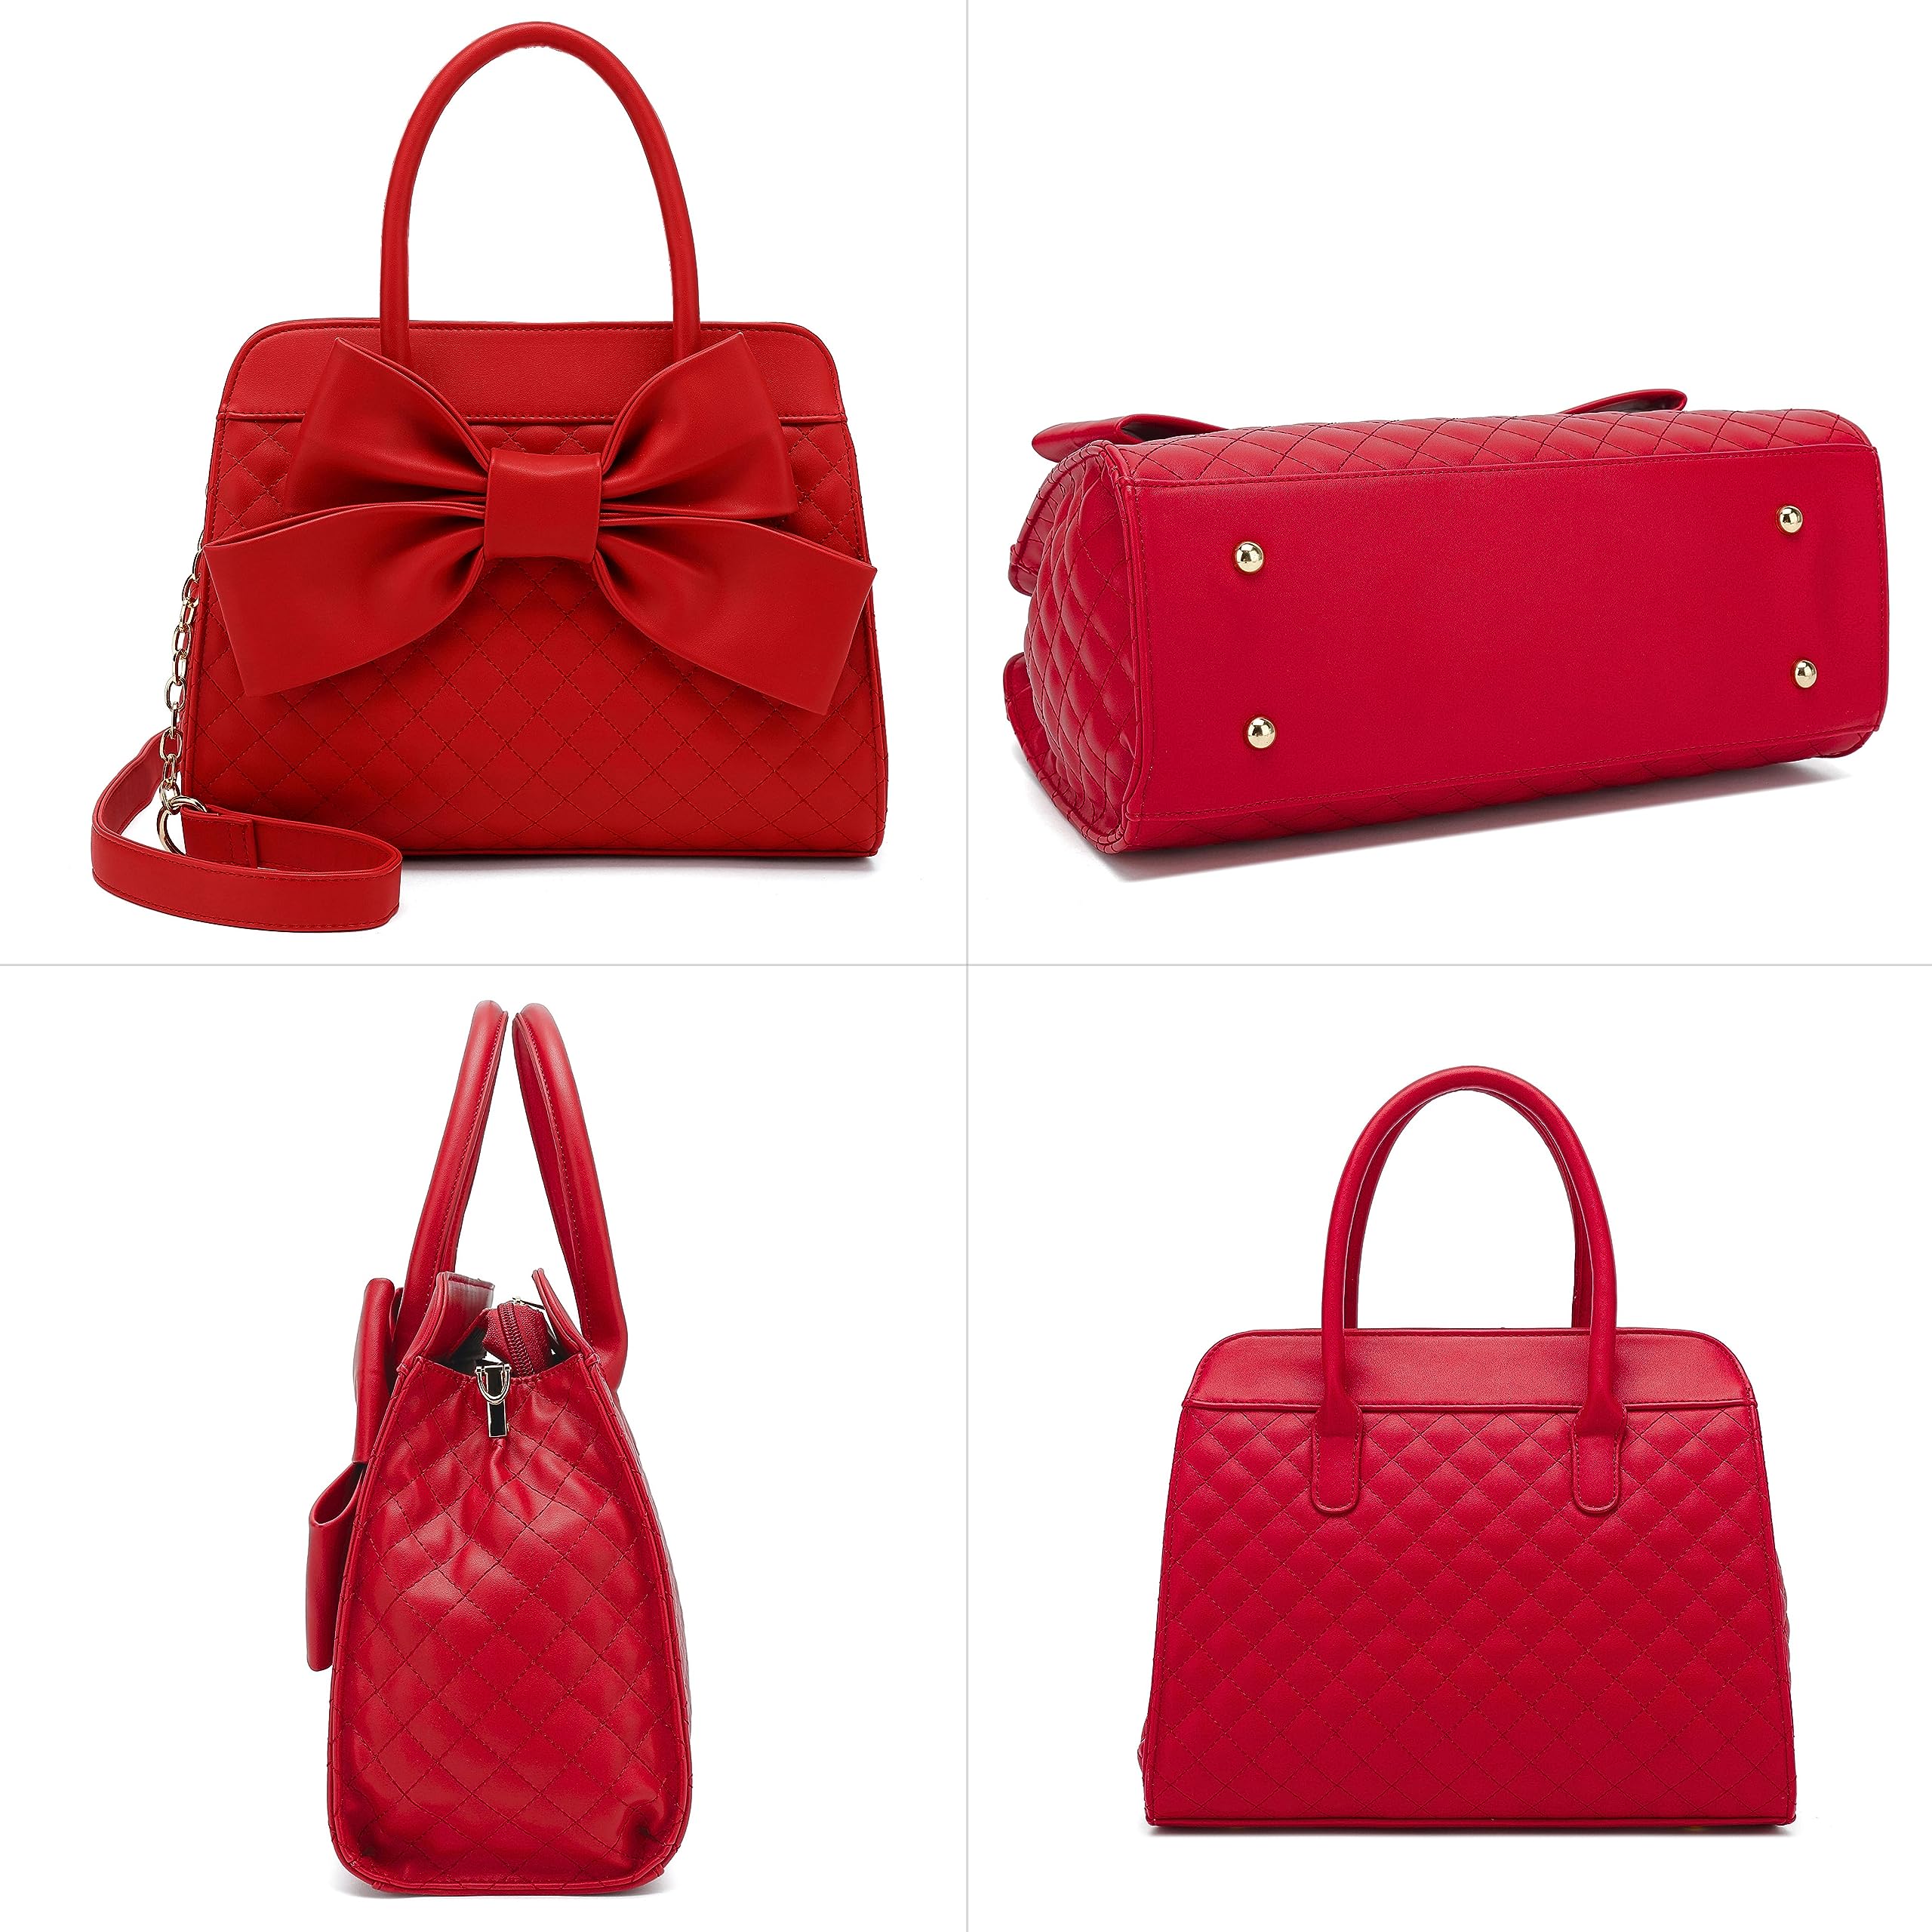 Scarleton Handbags for Women, Purses for Women, Purse with Bow, Satchel Handbags for Women, Satchel Bag for Women, H1048